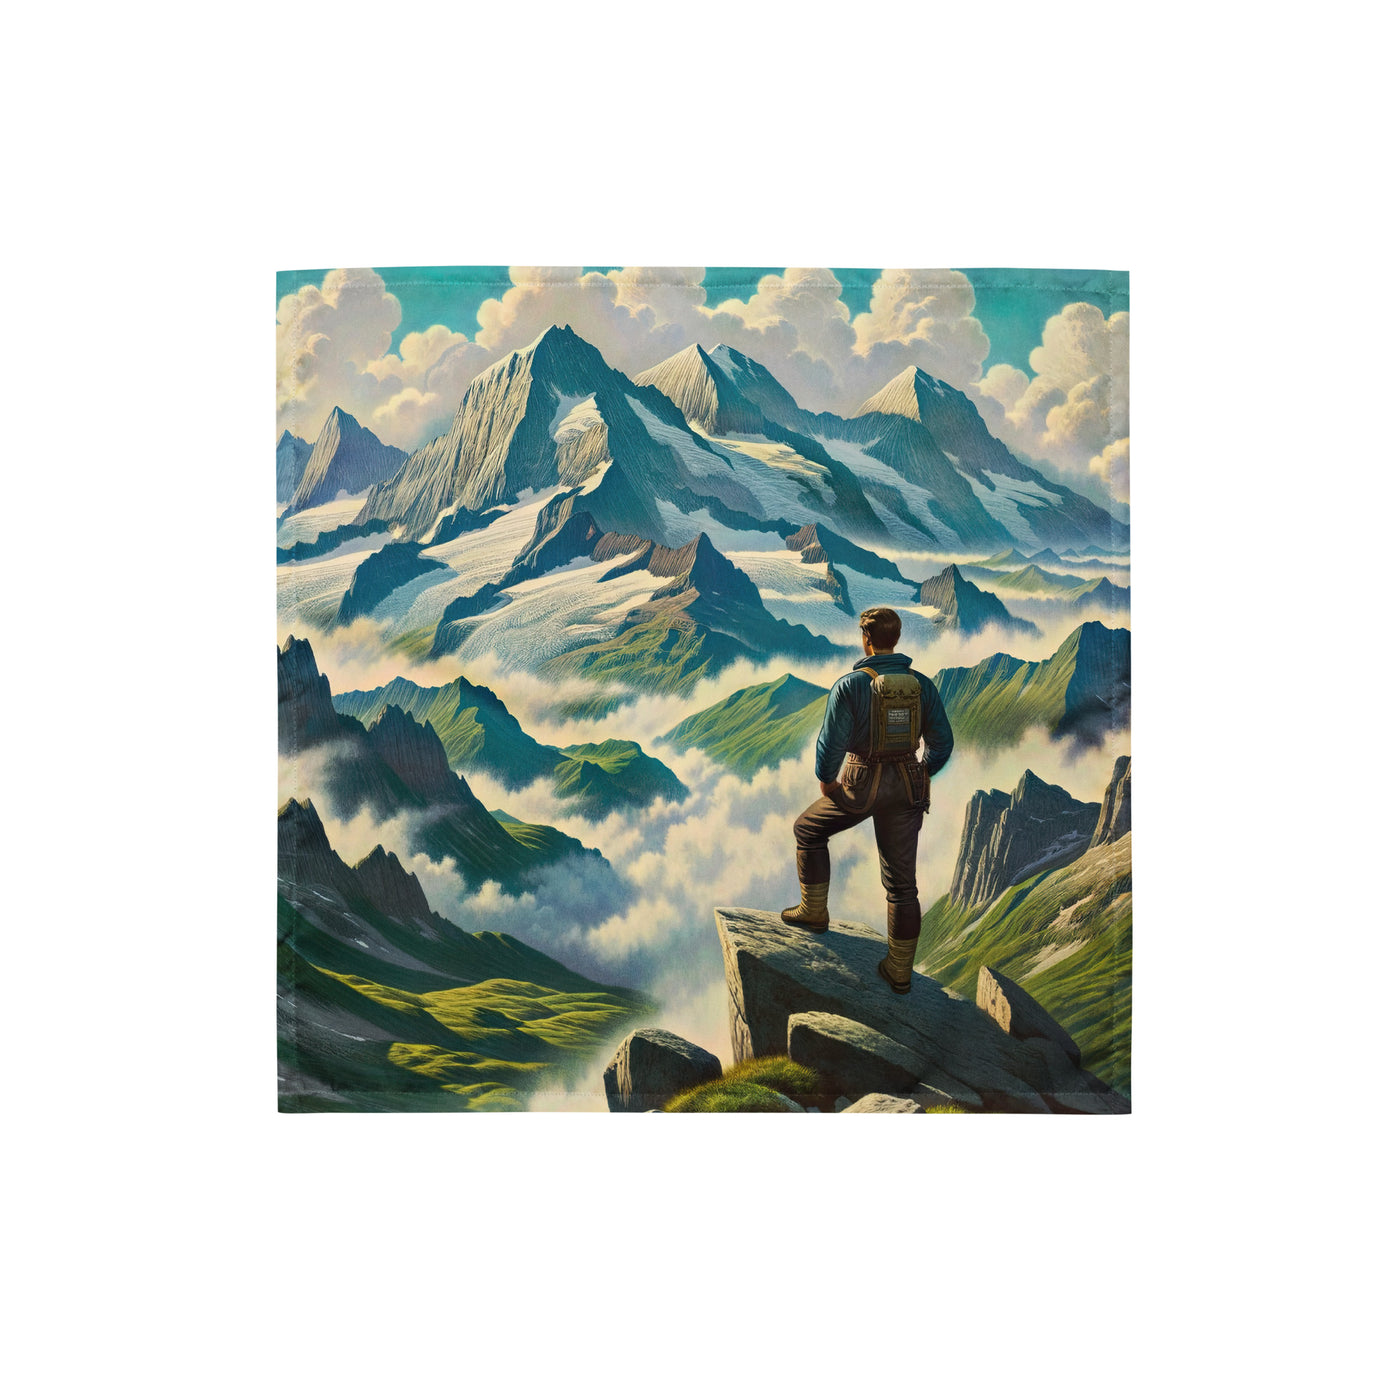 Panoramablick der Alpen mit Wanderer auf einem Hügel und schroffen Gipfeln - Bandana (All-Over Print) wandern xxx yyy zzz S